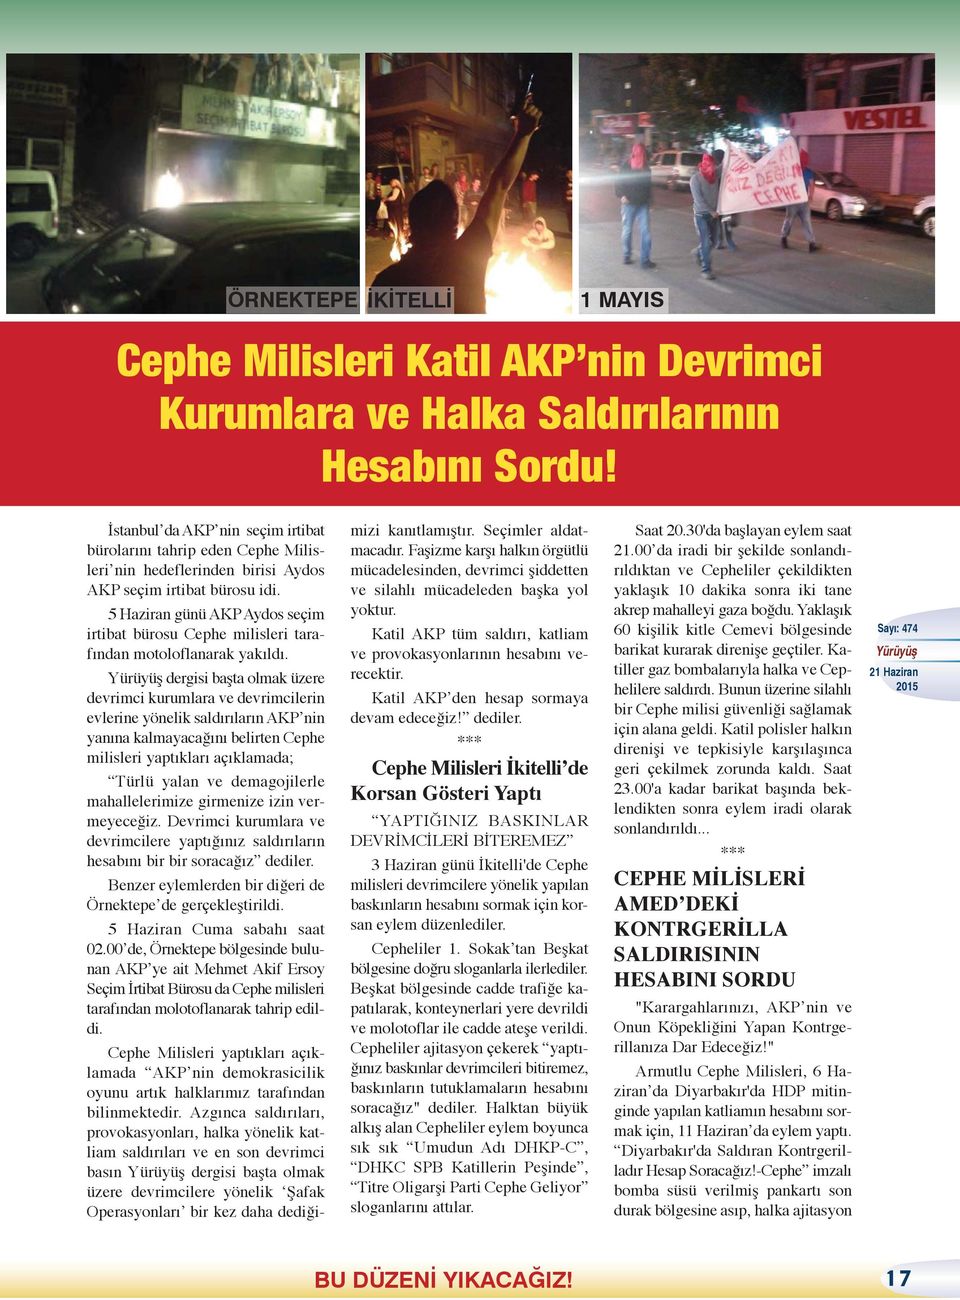 5 Haziran günü AKP Aydos seçim irtibat bürosu Cephe milisleri tarafından motoloflanarak yakıldı.